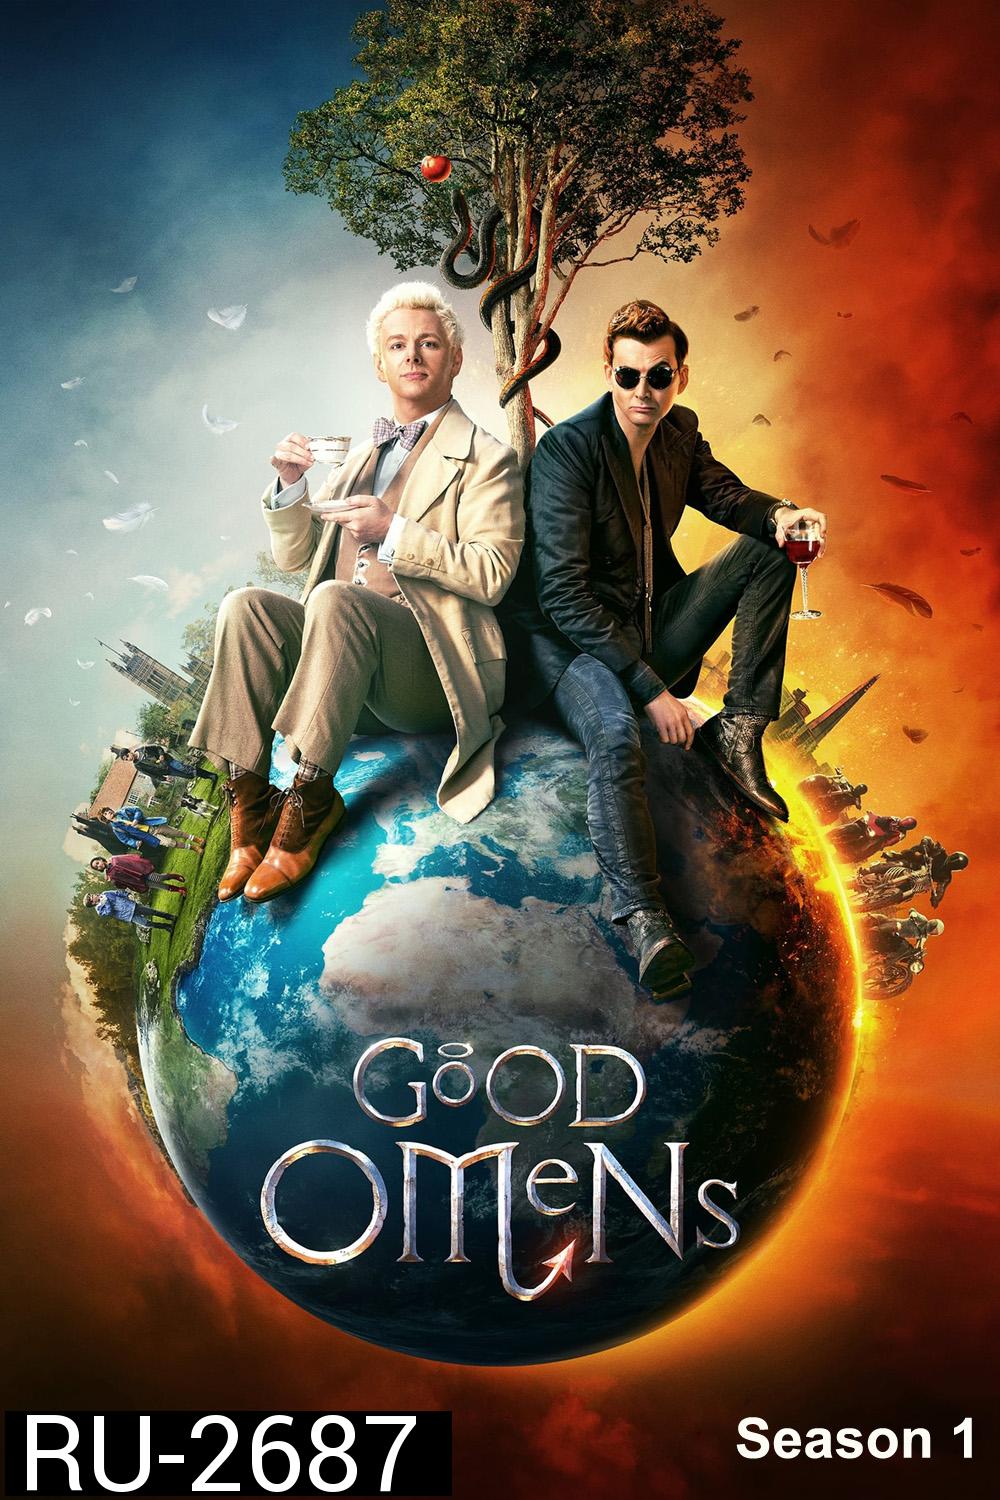 Good Omens Season 1 (2019) คำสาปสวรรค์ ปี 1 (6 ตอน)